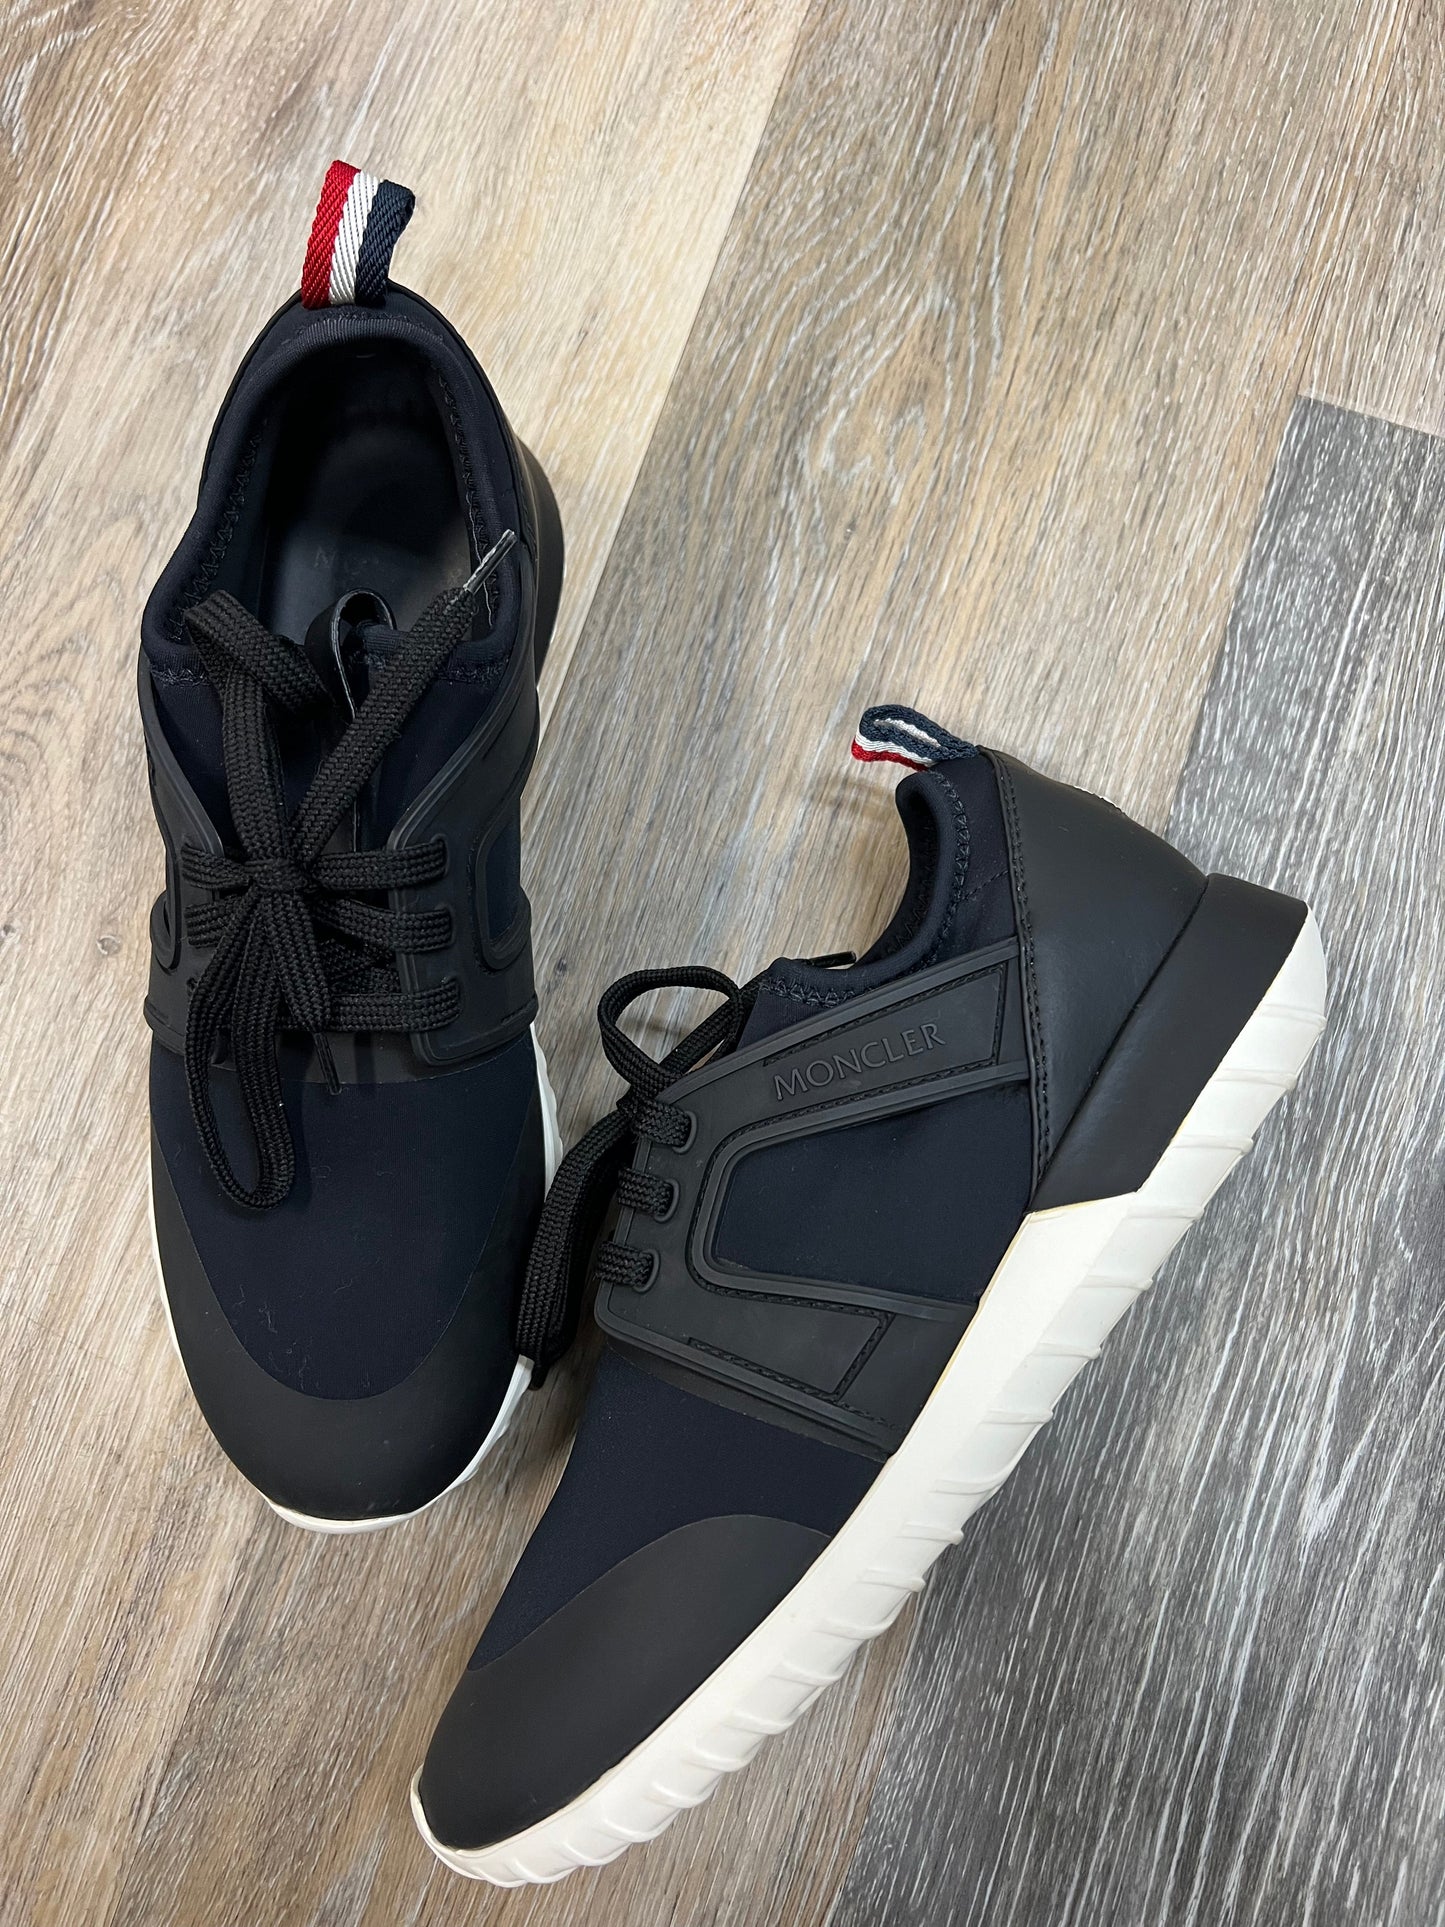 Black Shoes Designer Moncler, Size 7.5/37.5